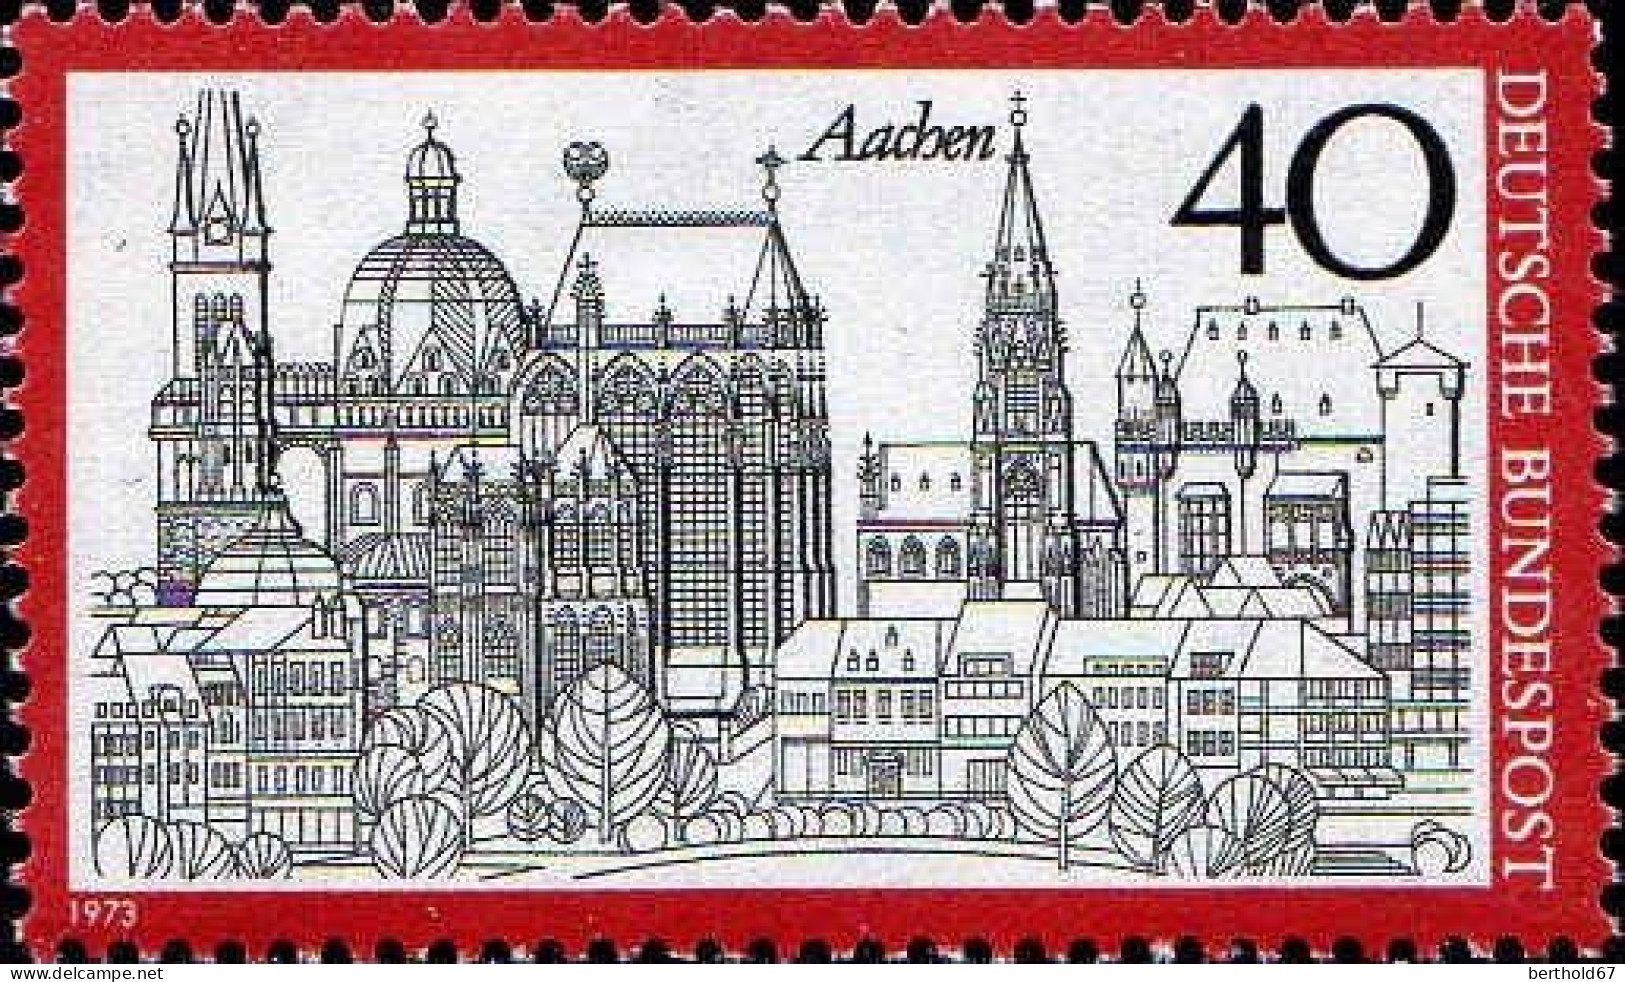 RFA Poste N** Yv: 637 Mi:789 Aachen - Unused Stamps